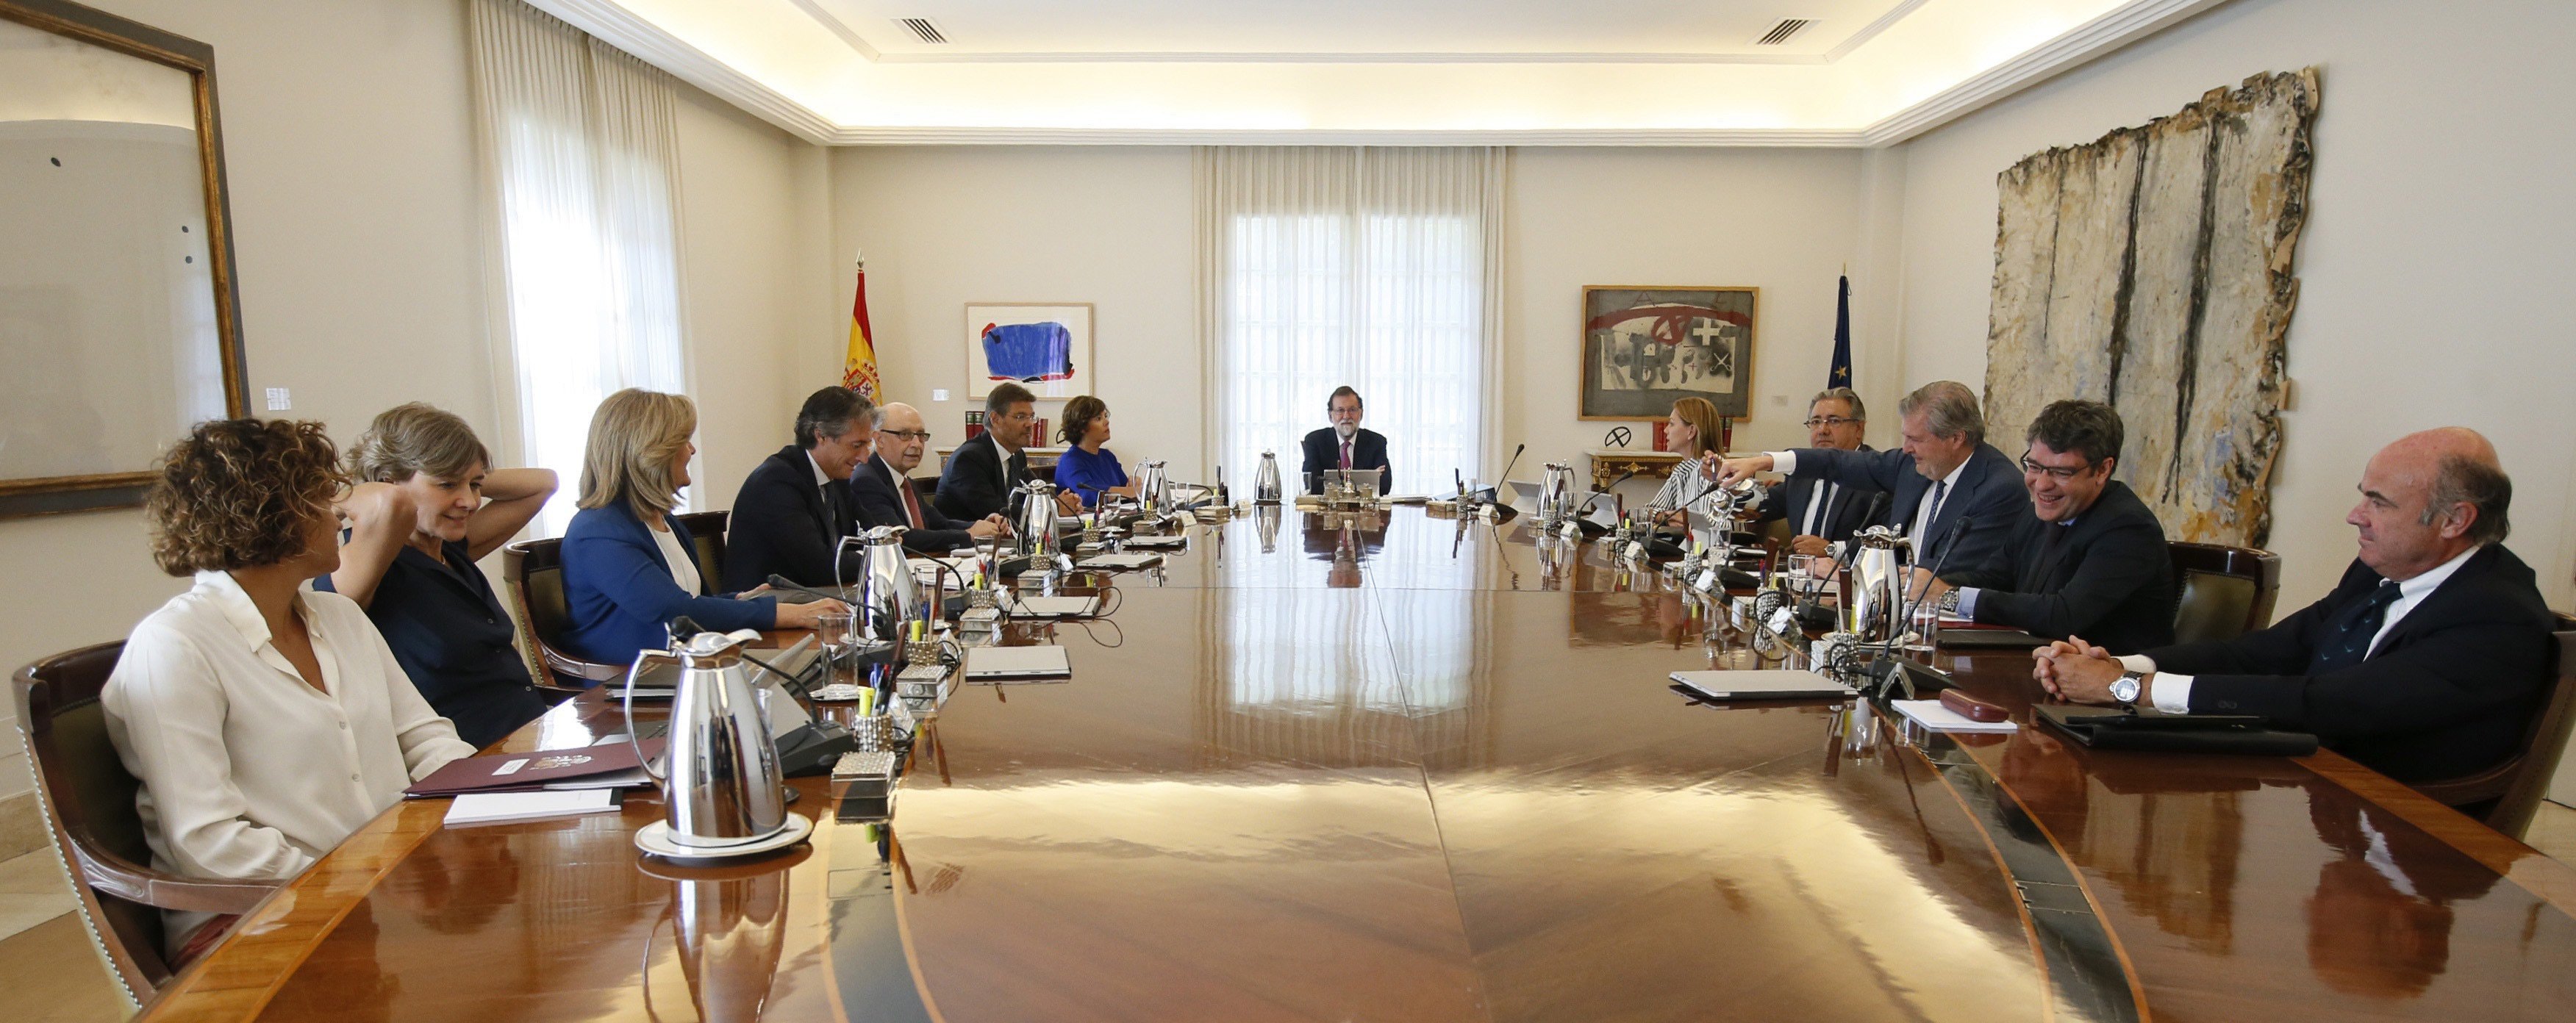 Aquest divendres, Consell de Ministres amb la mirada fixa a Catalunya